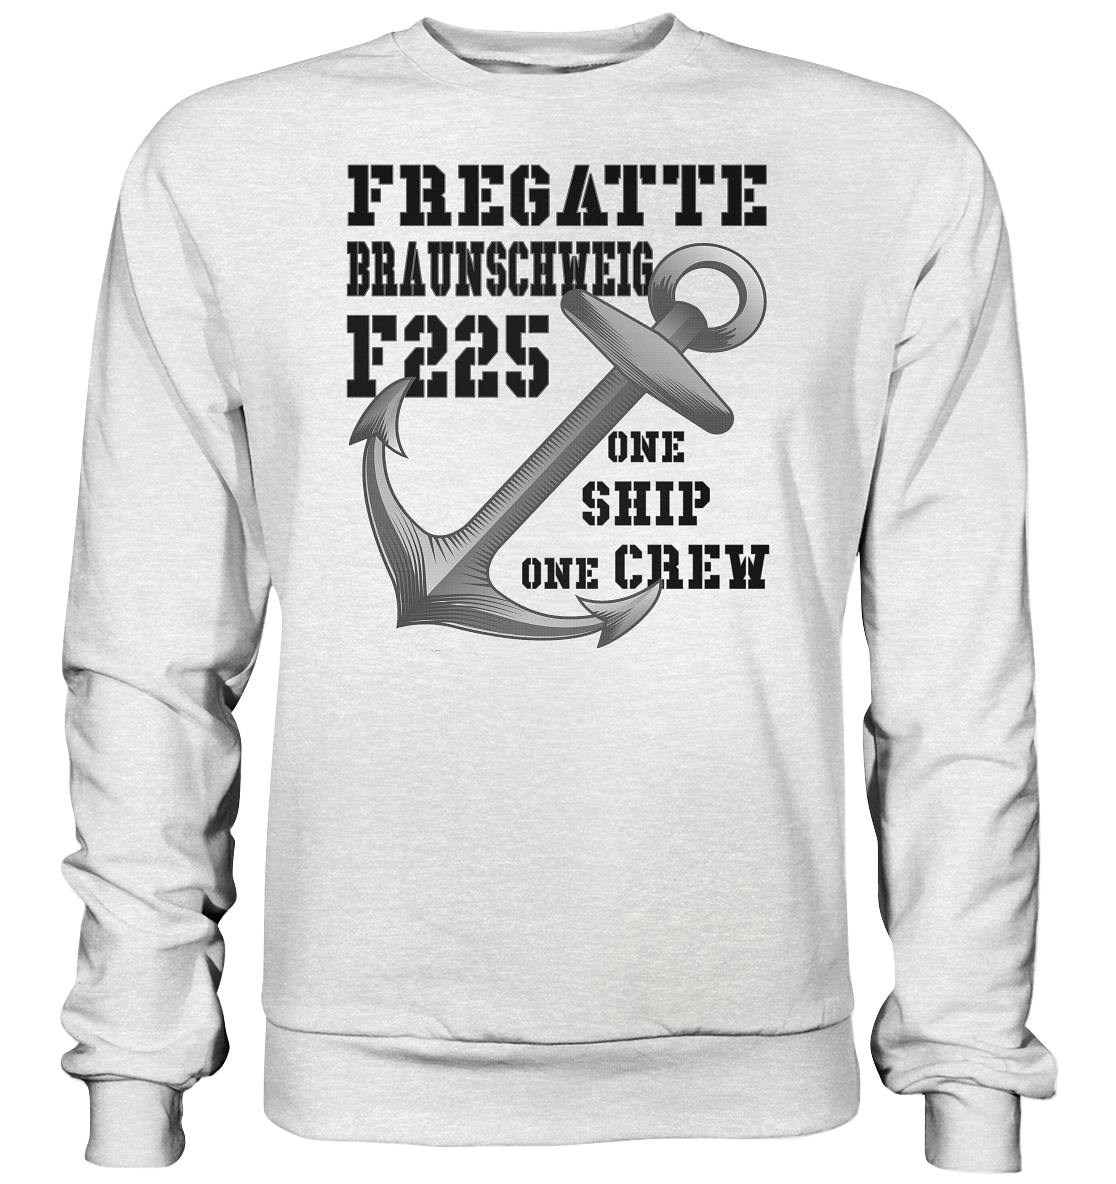 Fregatte F225 BRAUNSCHWEIG - One Ship on Crew - Premium Sweatshirt